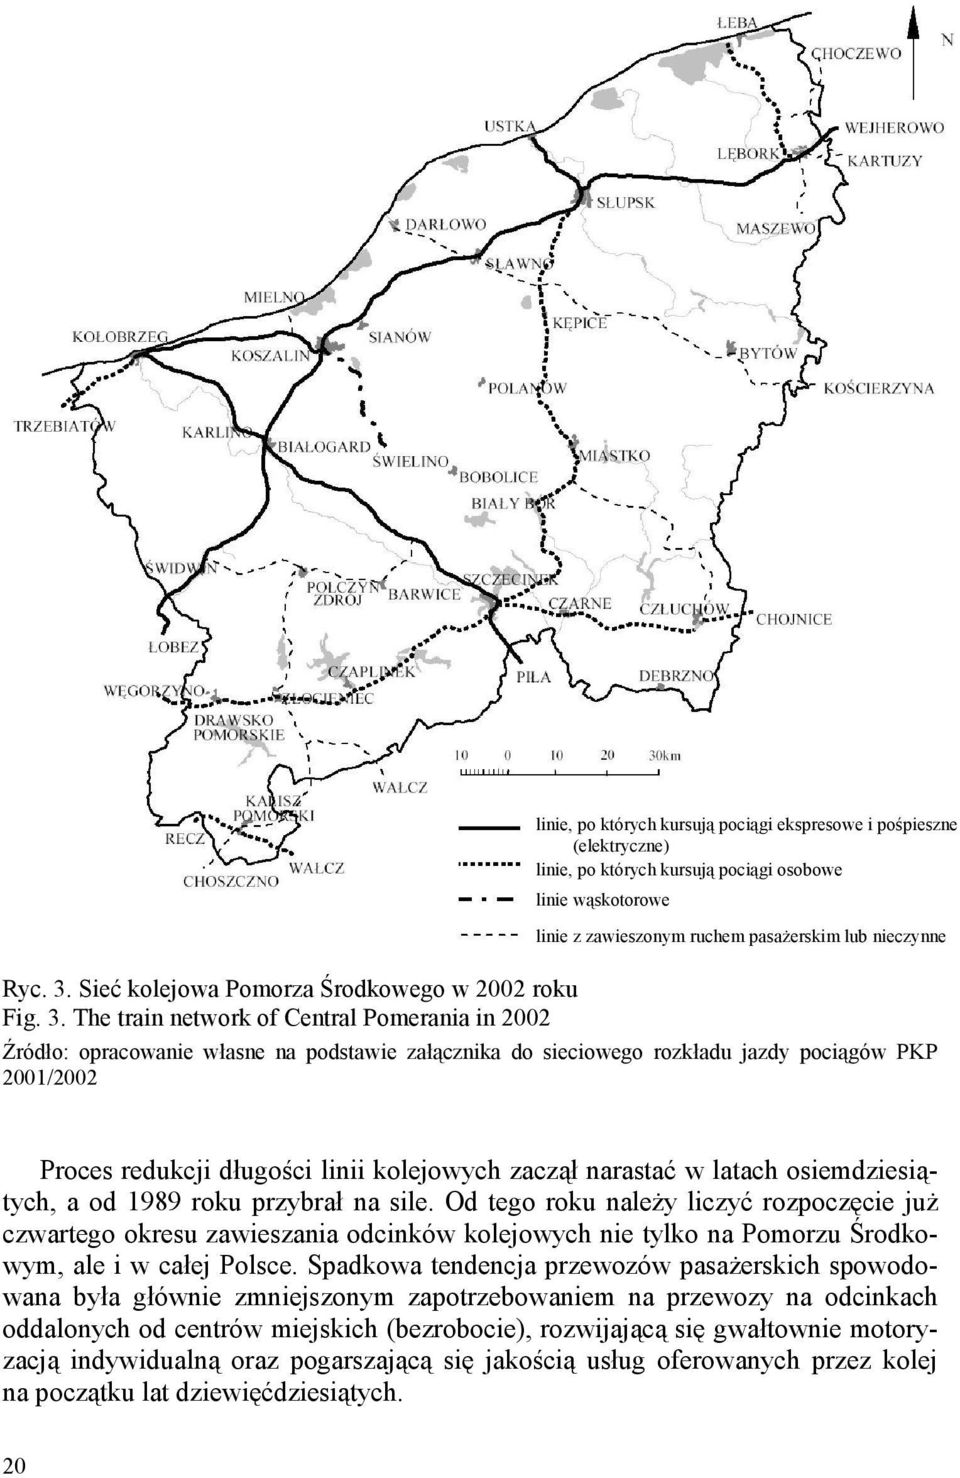 The train network of Central Pomerania in 2002 linie, po których kursują pociągi ekspresowe i pośpieszne (elektryczne) linie, po których kursują pociągi osobowe linie wąskotorowe linie z zawieszonym